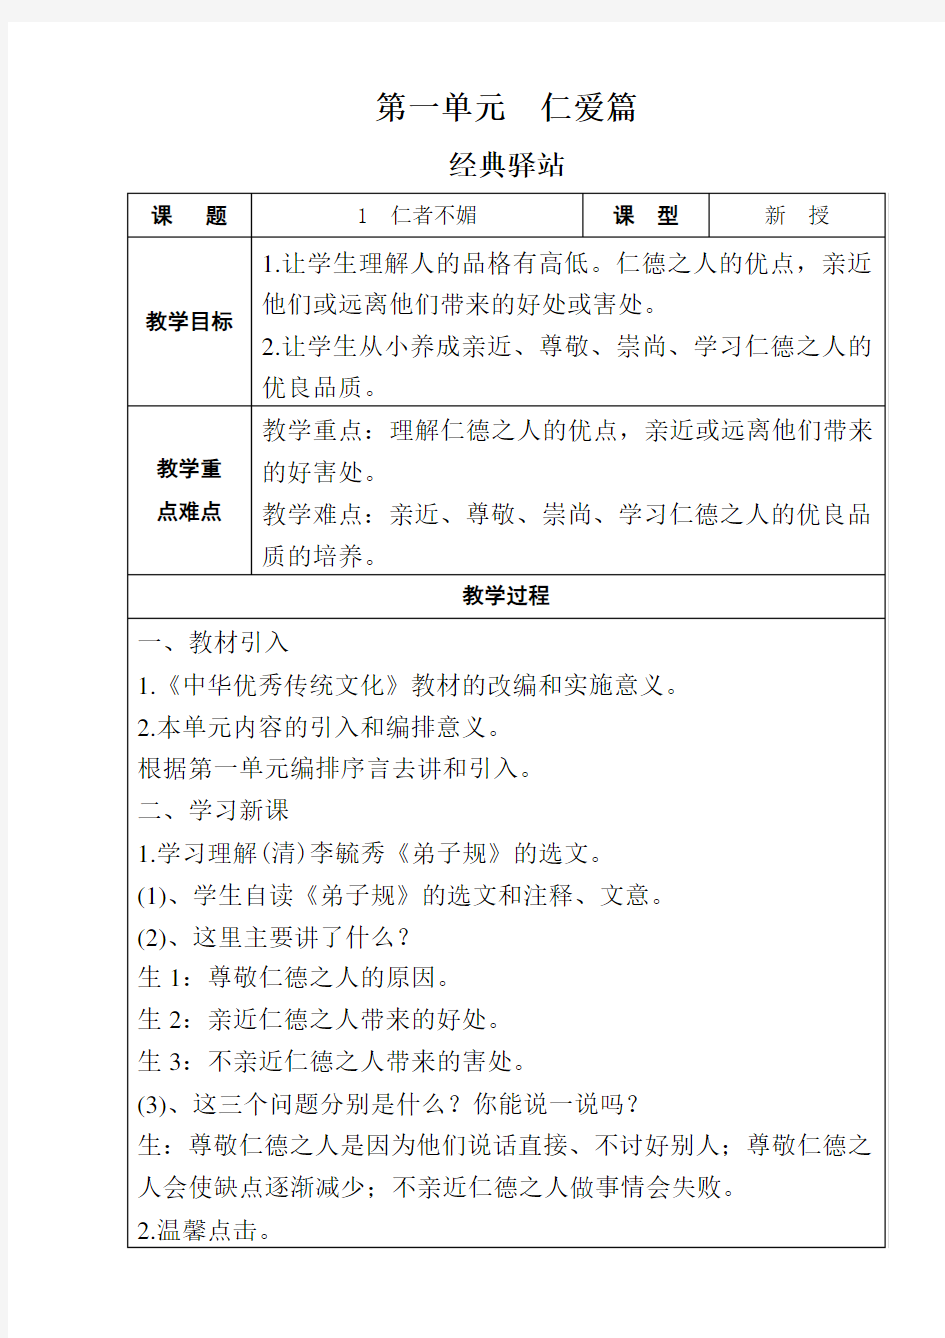 三年级上中华优秀传统文化教案(表格)2019山东大学出版社